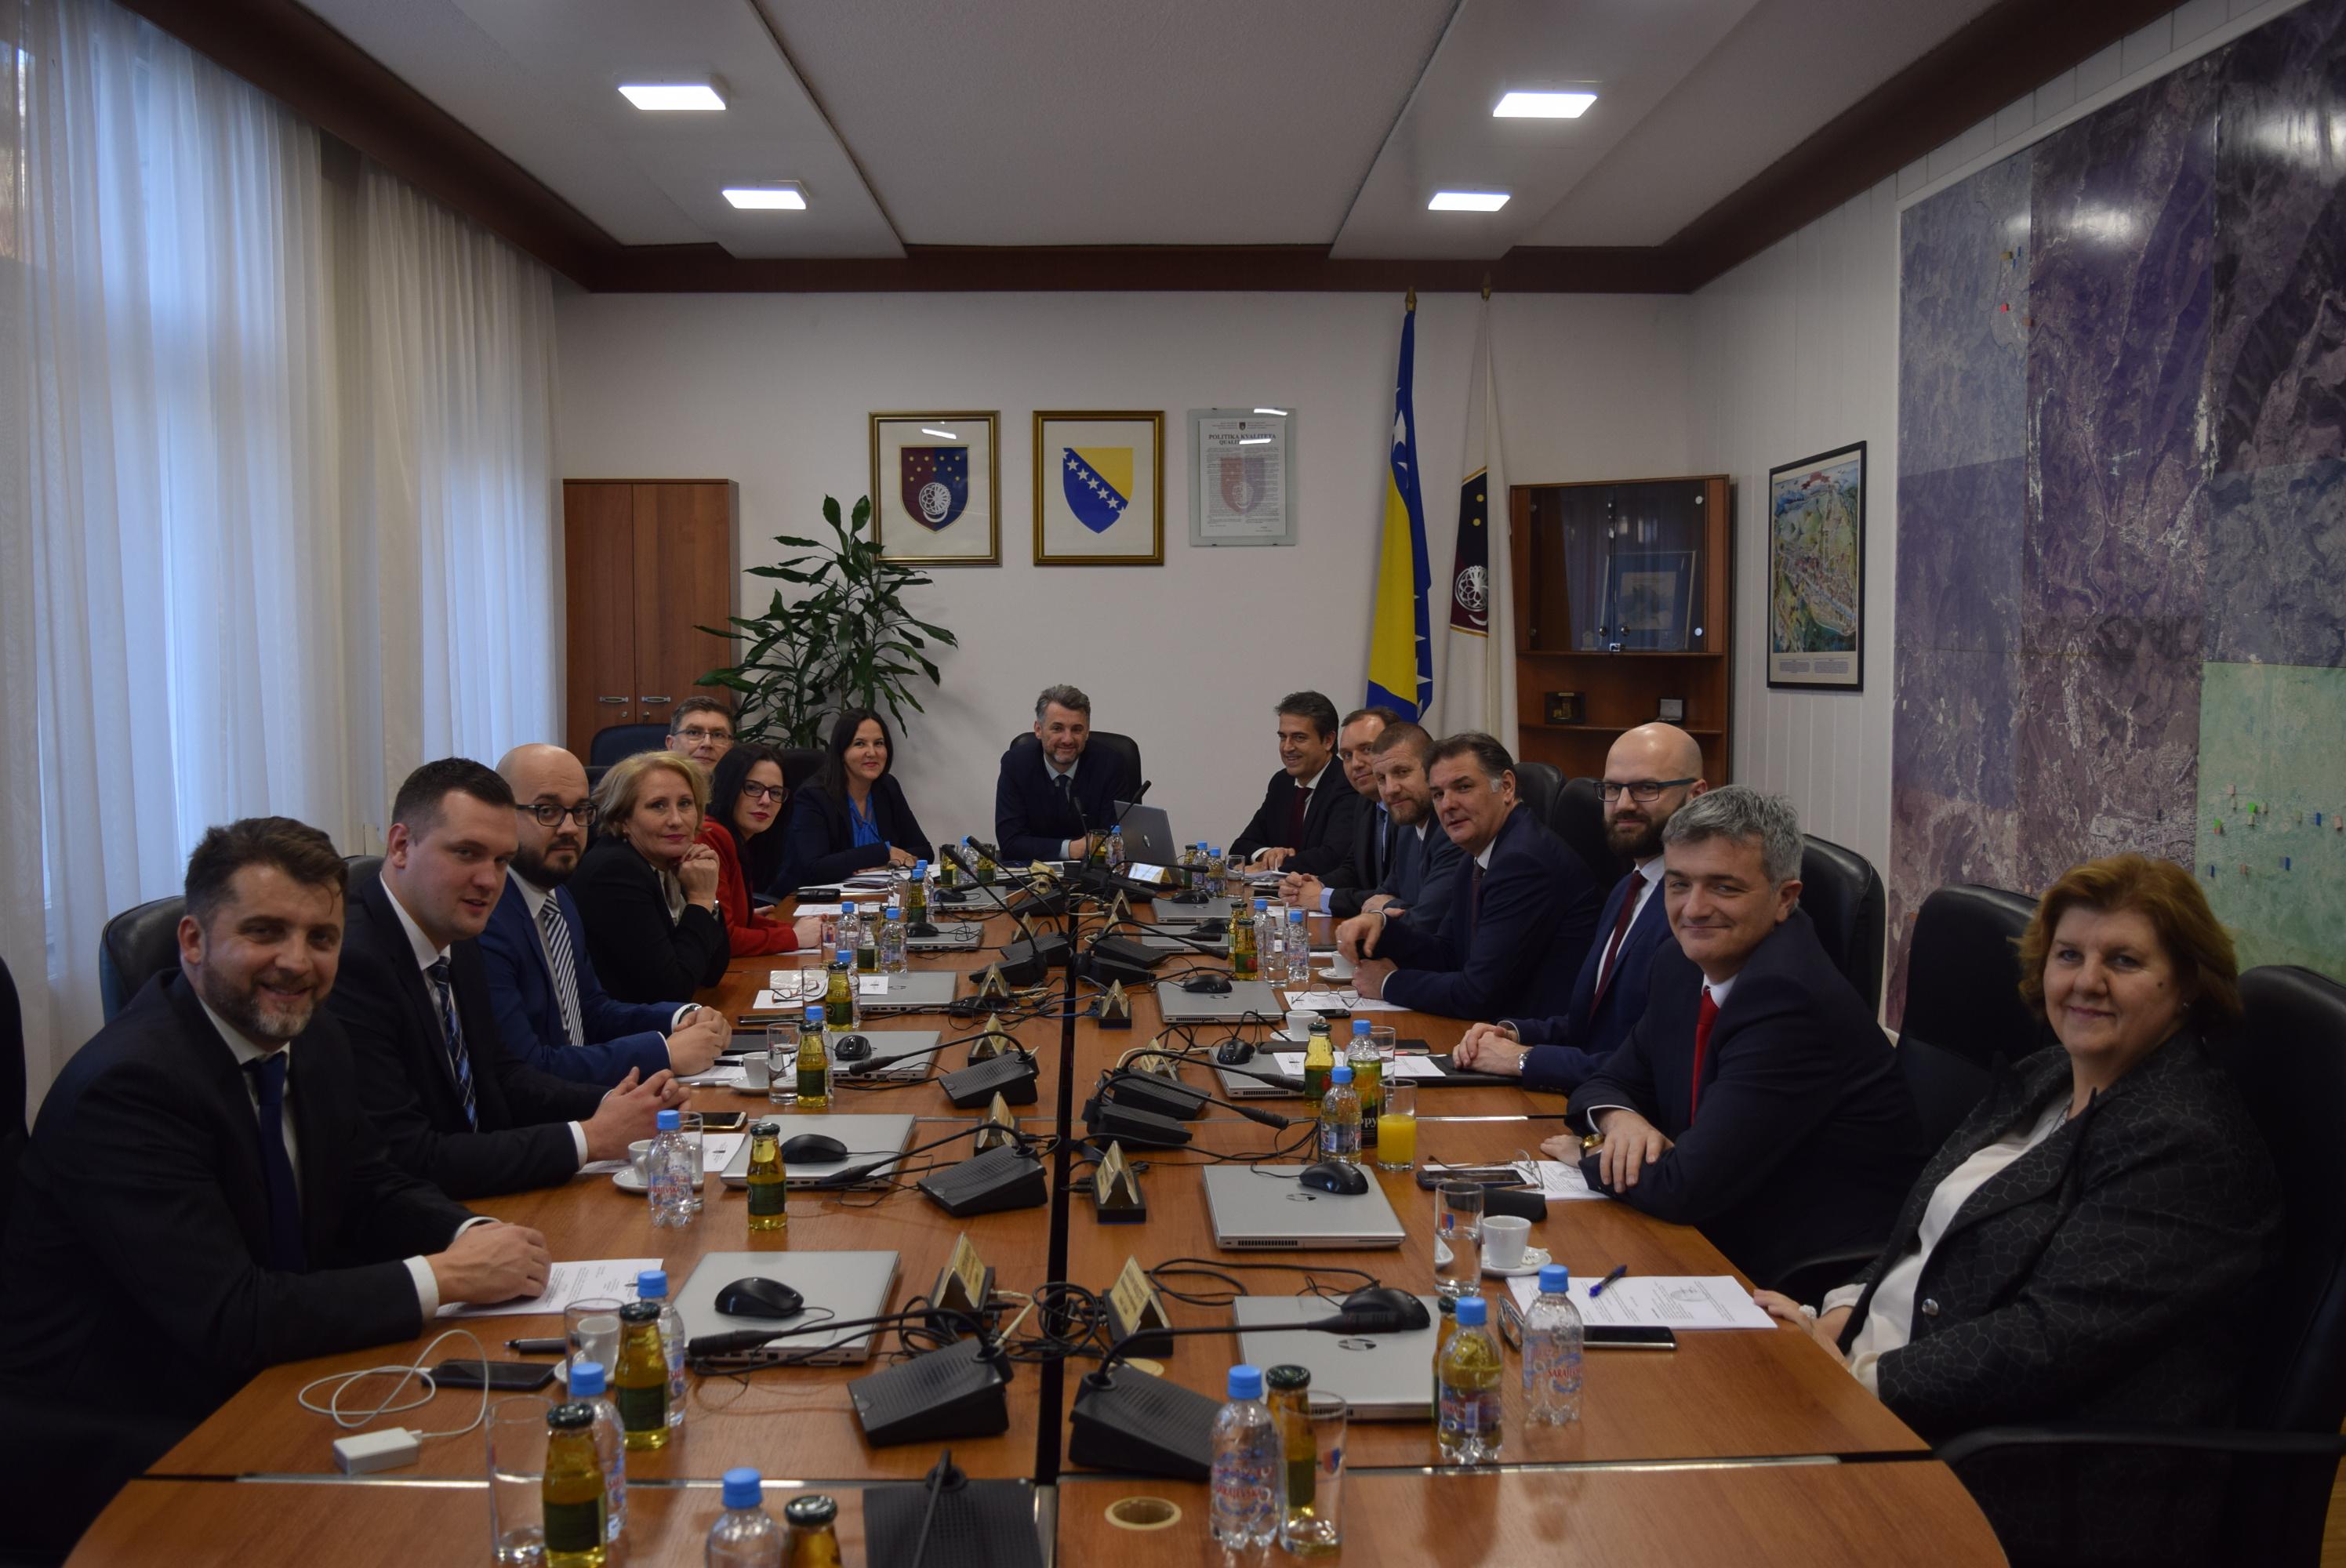 Ministri studiozno radili na unapređenju budžeta KS - Avaz